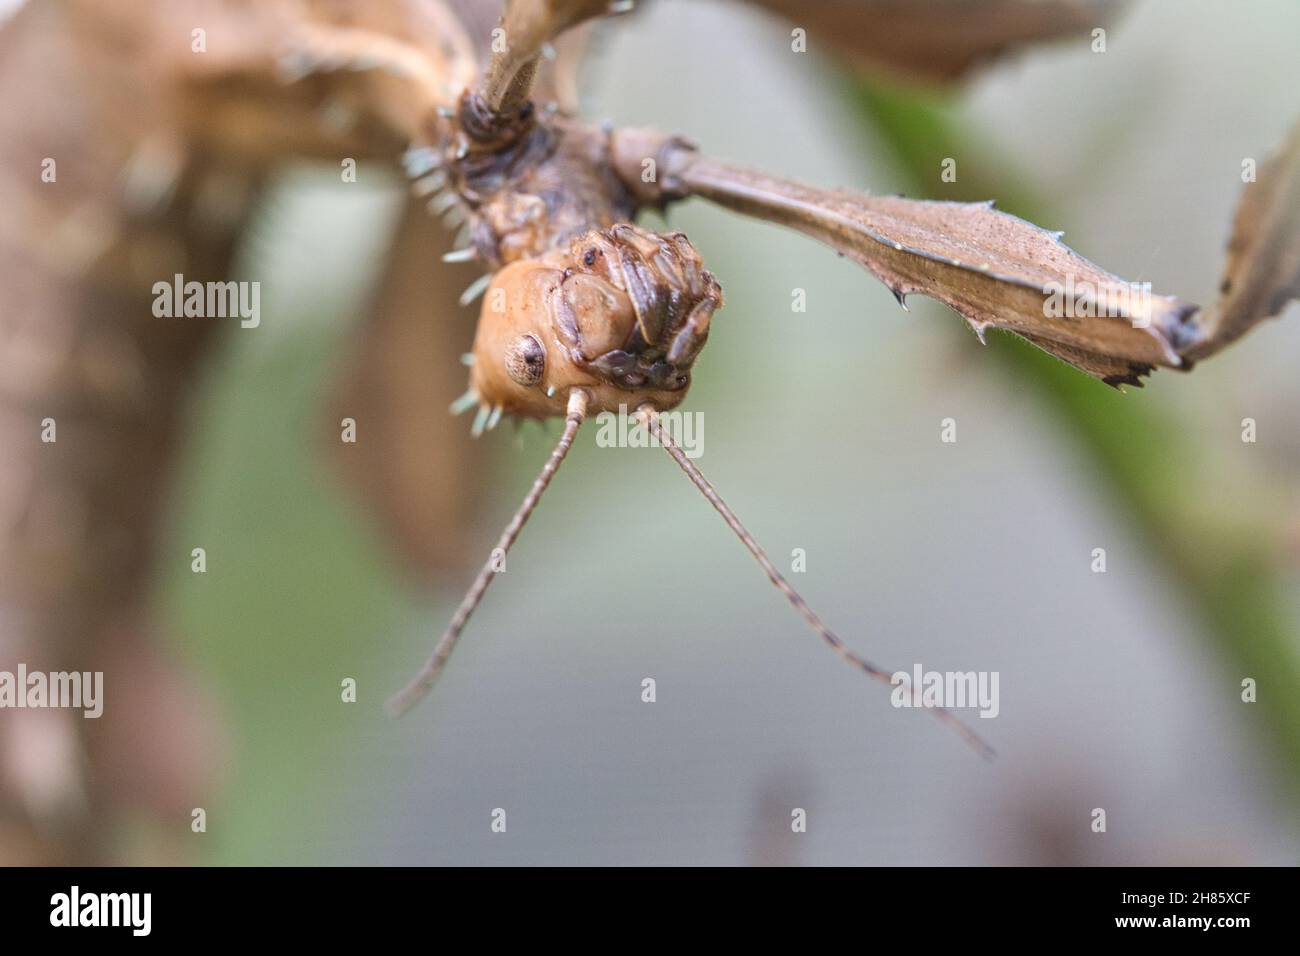 Kopf einer Gottesanbeterin, lauert auf einem Ast. Interessante Insekten, die gut beobachtet werden können. Stockfoto